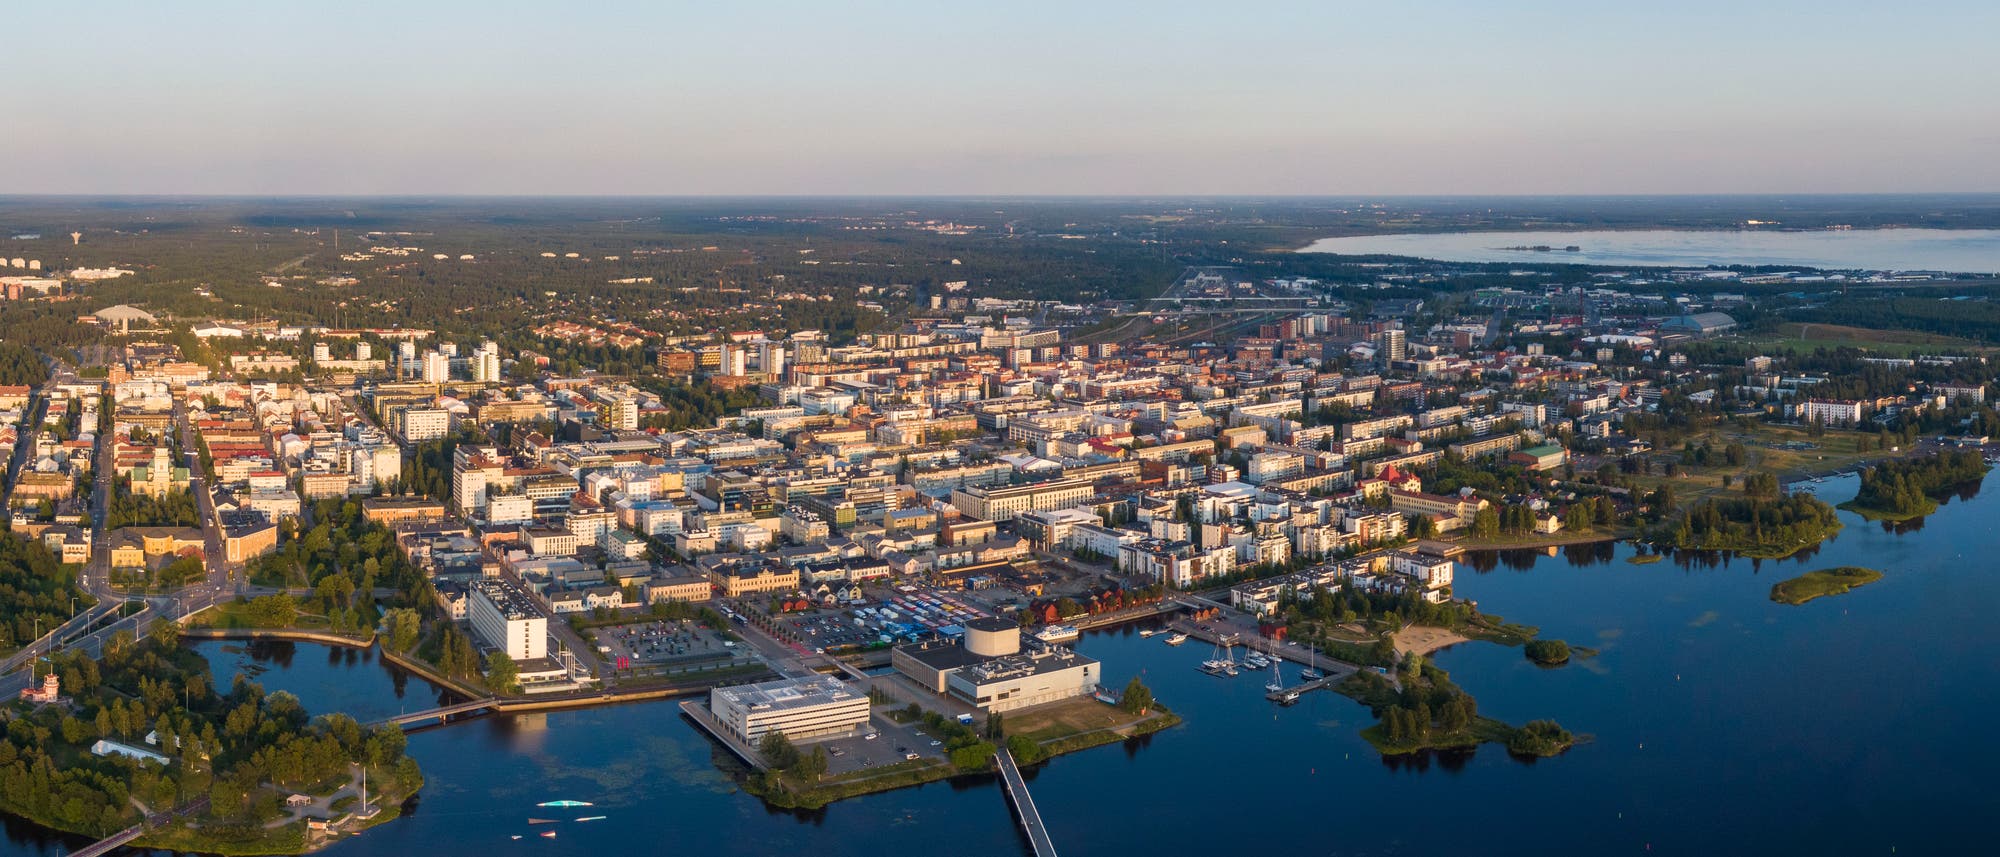 Die finnische Stadt Oulu liegt am Nordende des Bottnischen Meerbusens inmitten der nordeuropäischen Taiga.